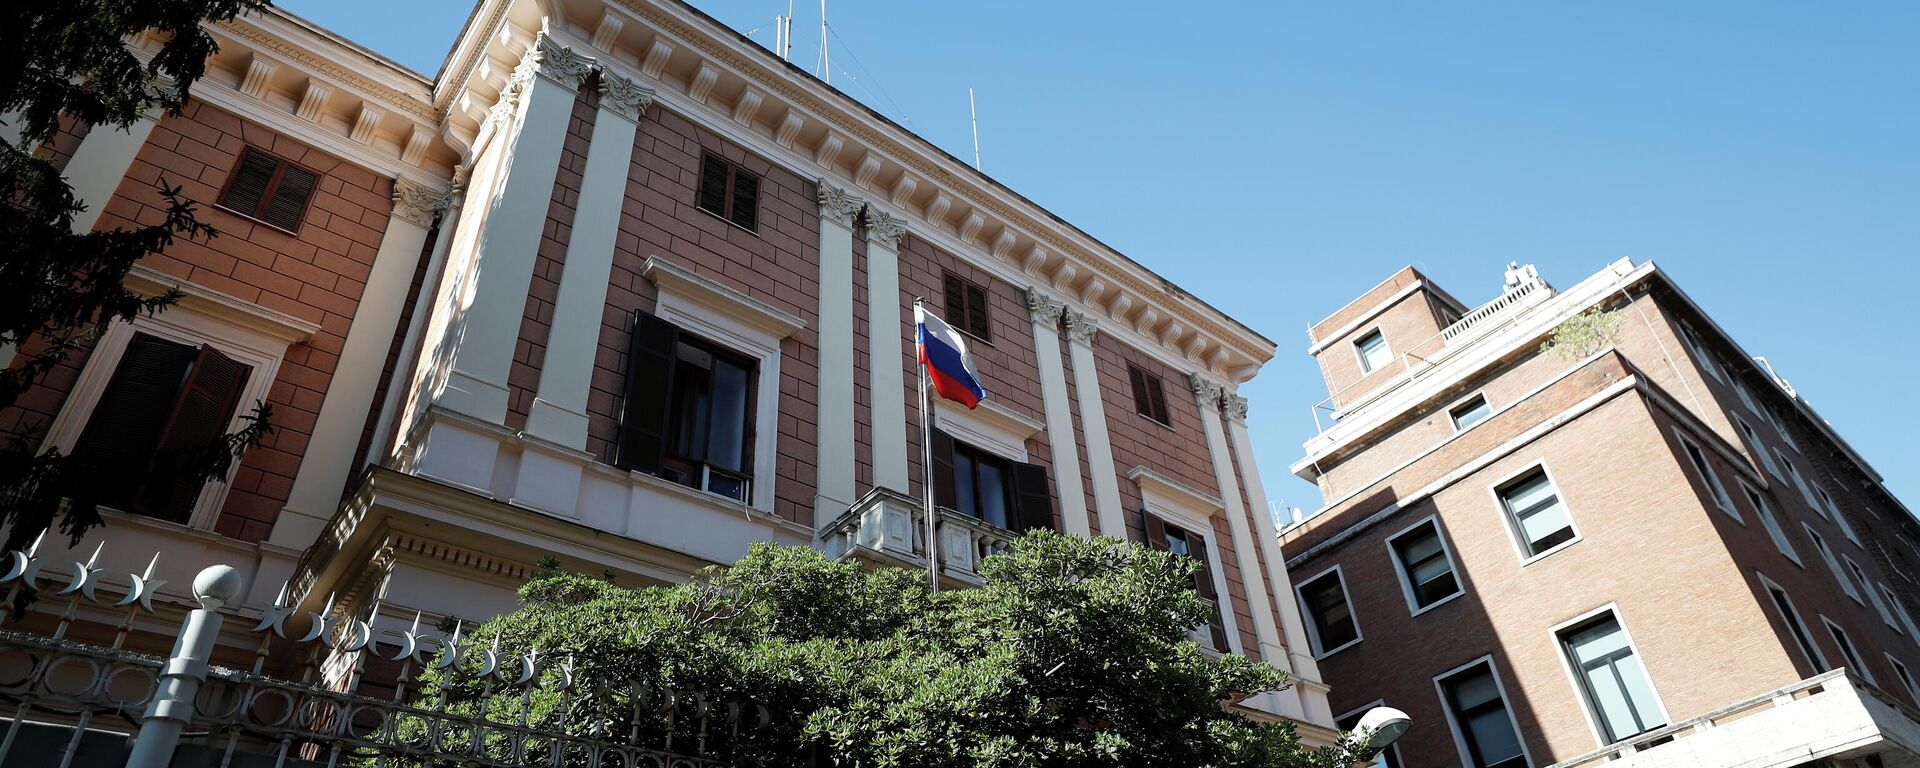 Embajada de Rusia en Roma, Italia - Sputnik Mundo, 1920, 02.04.2021